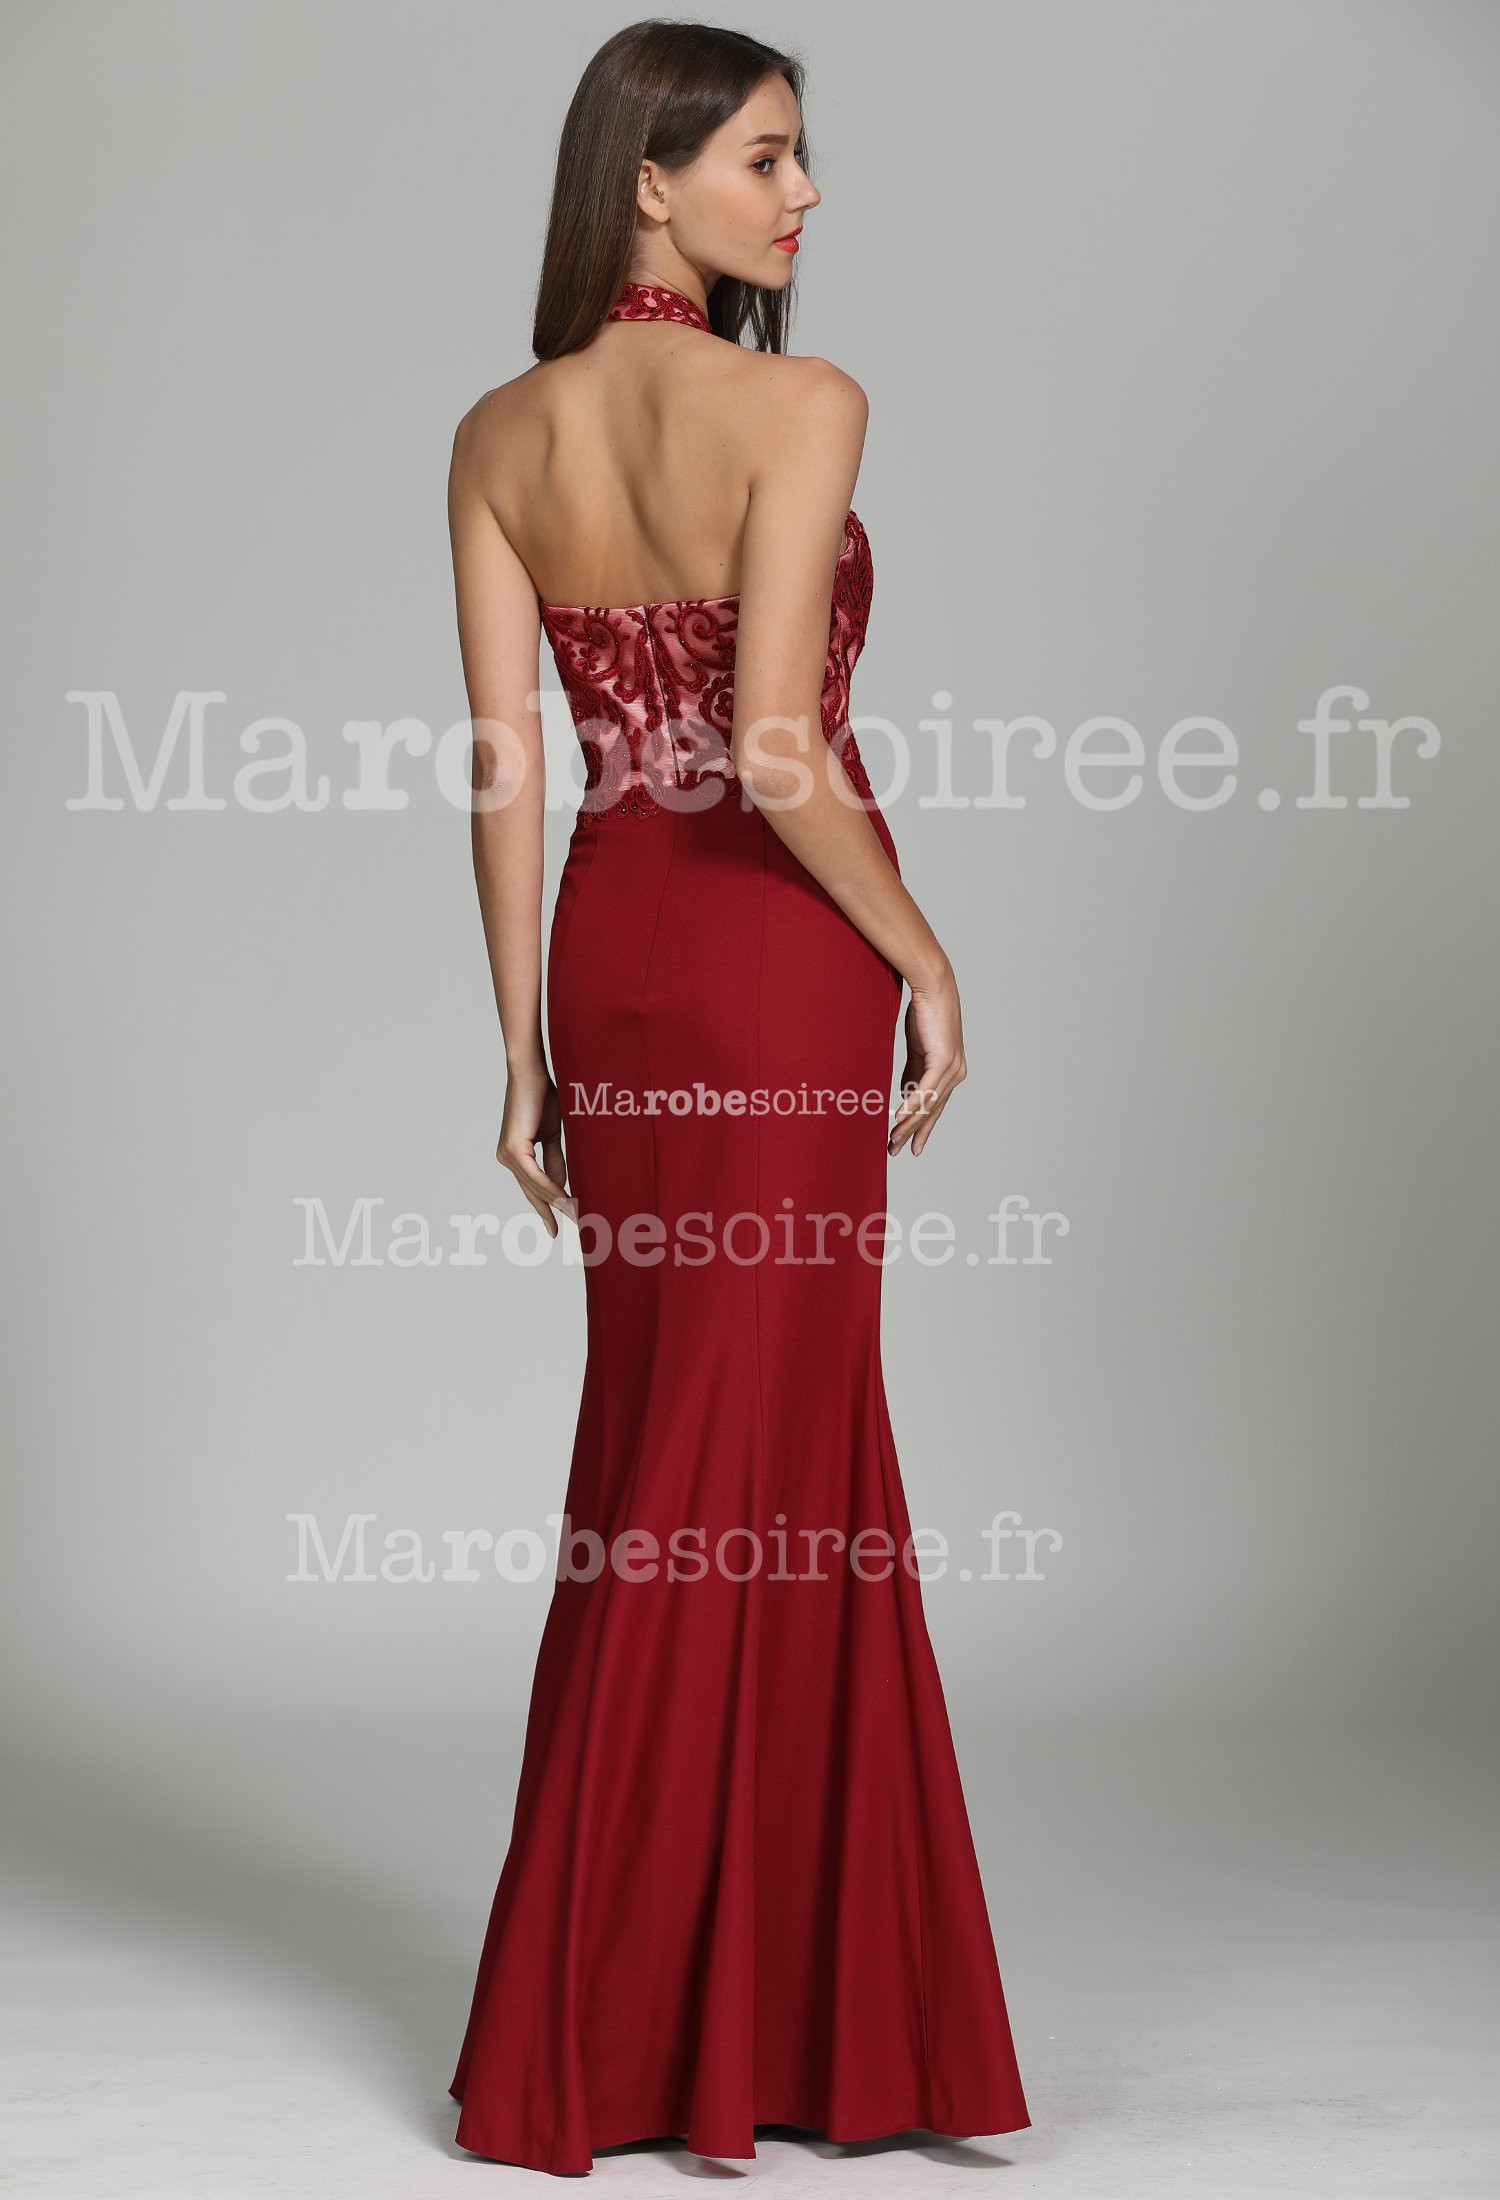 Importé - Robe De Soirée Femme Longue Dos Ouvert - Rouge